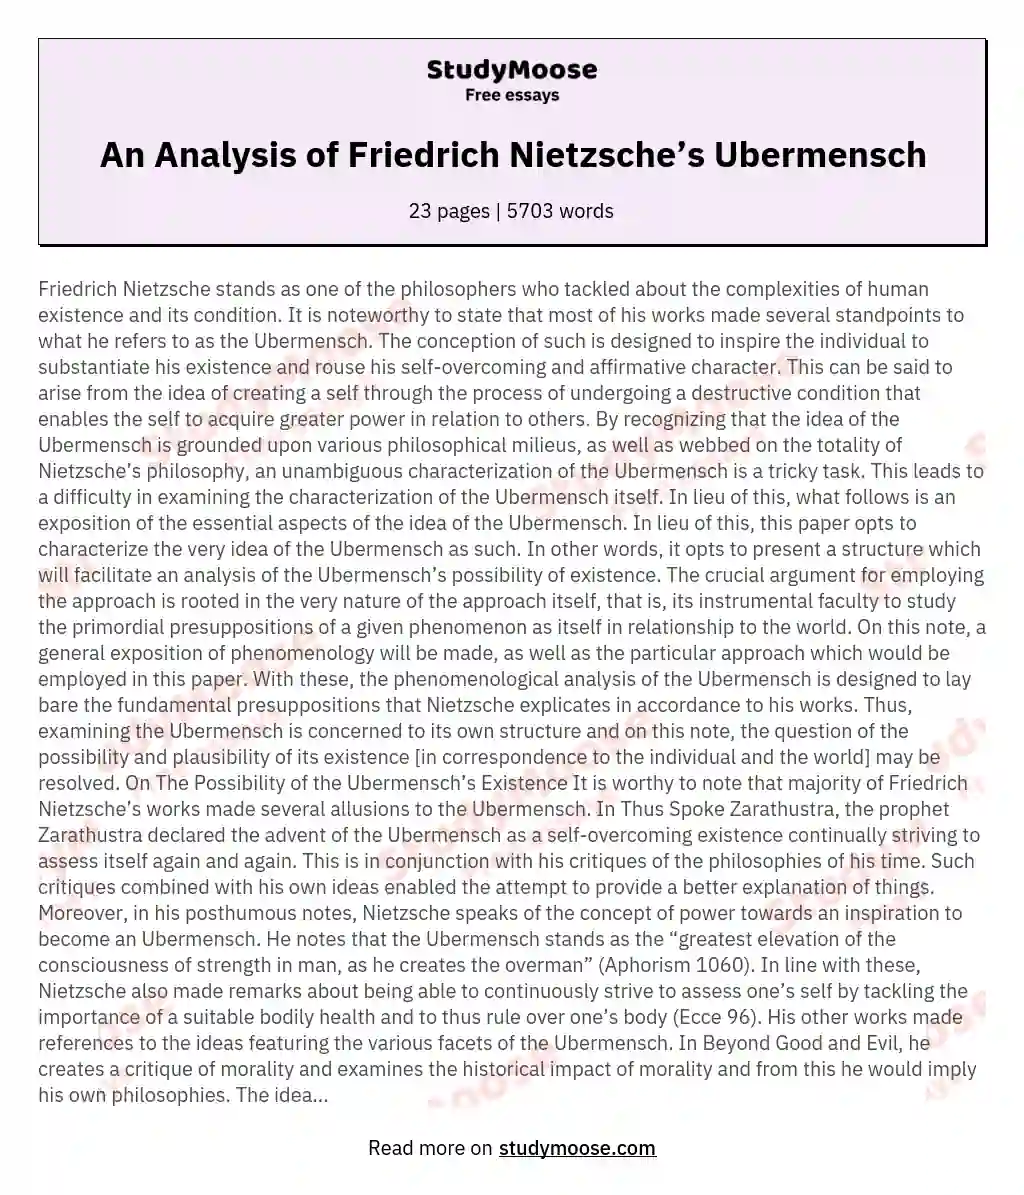 An Analysis of Friedrich Nietzsche’s Ubermensch essay